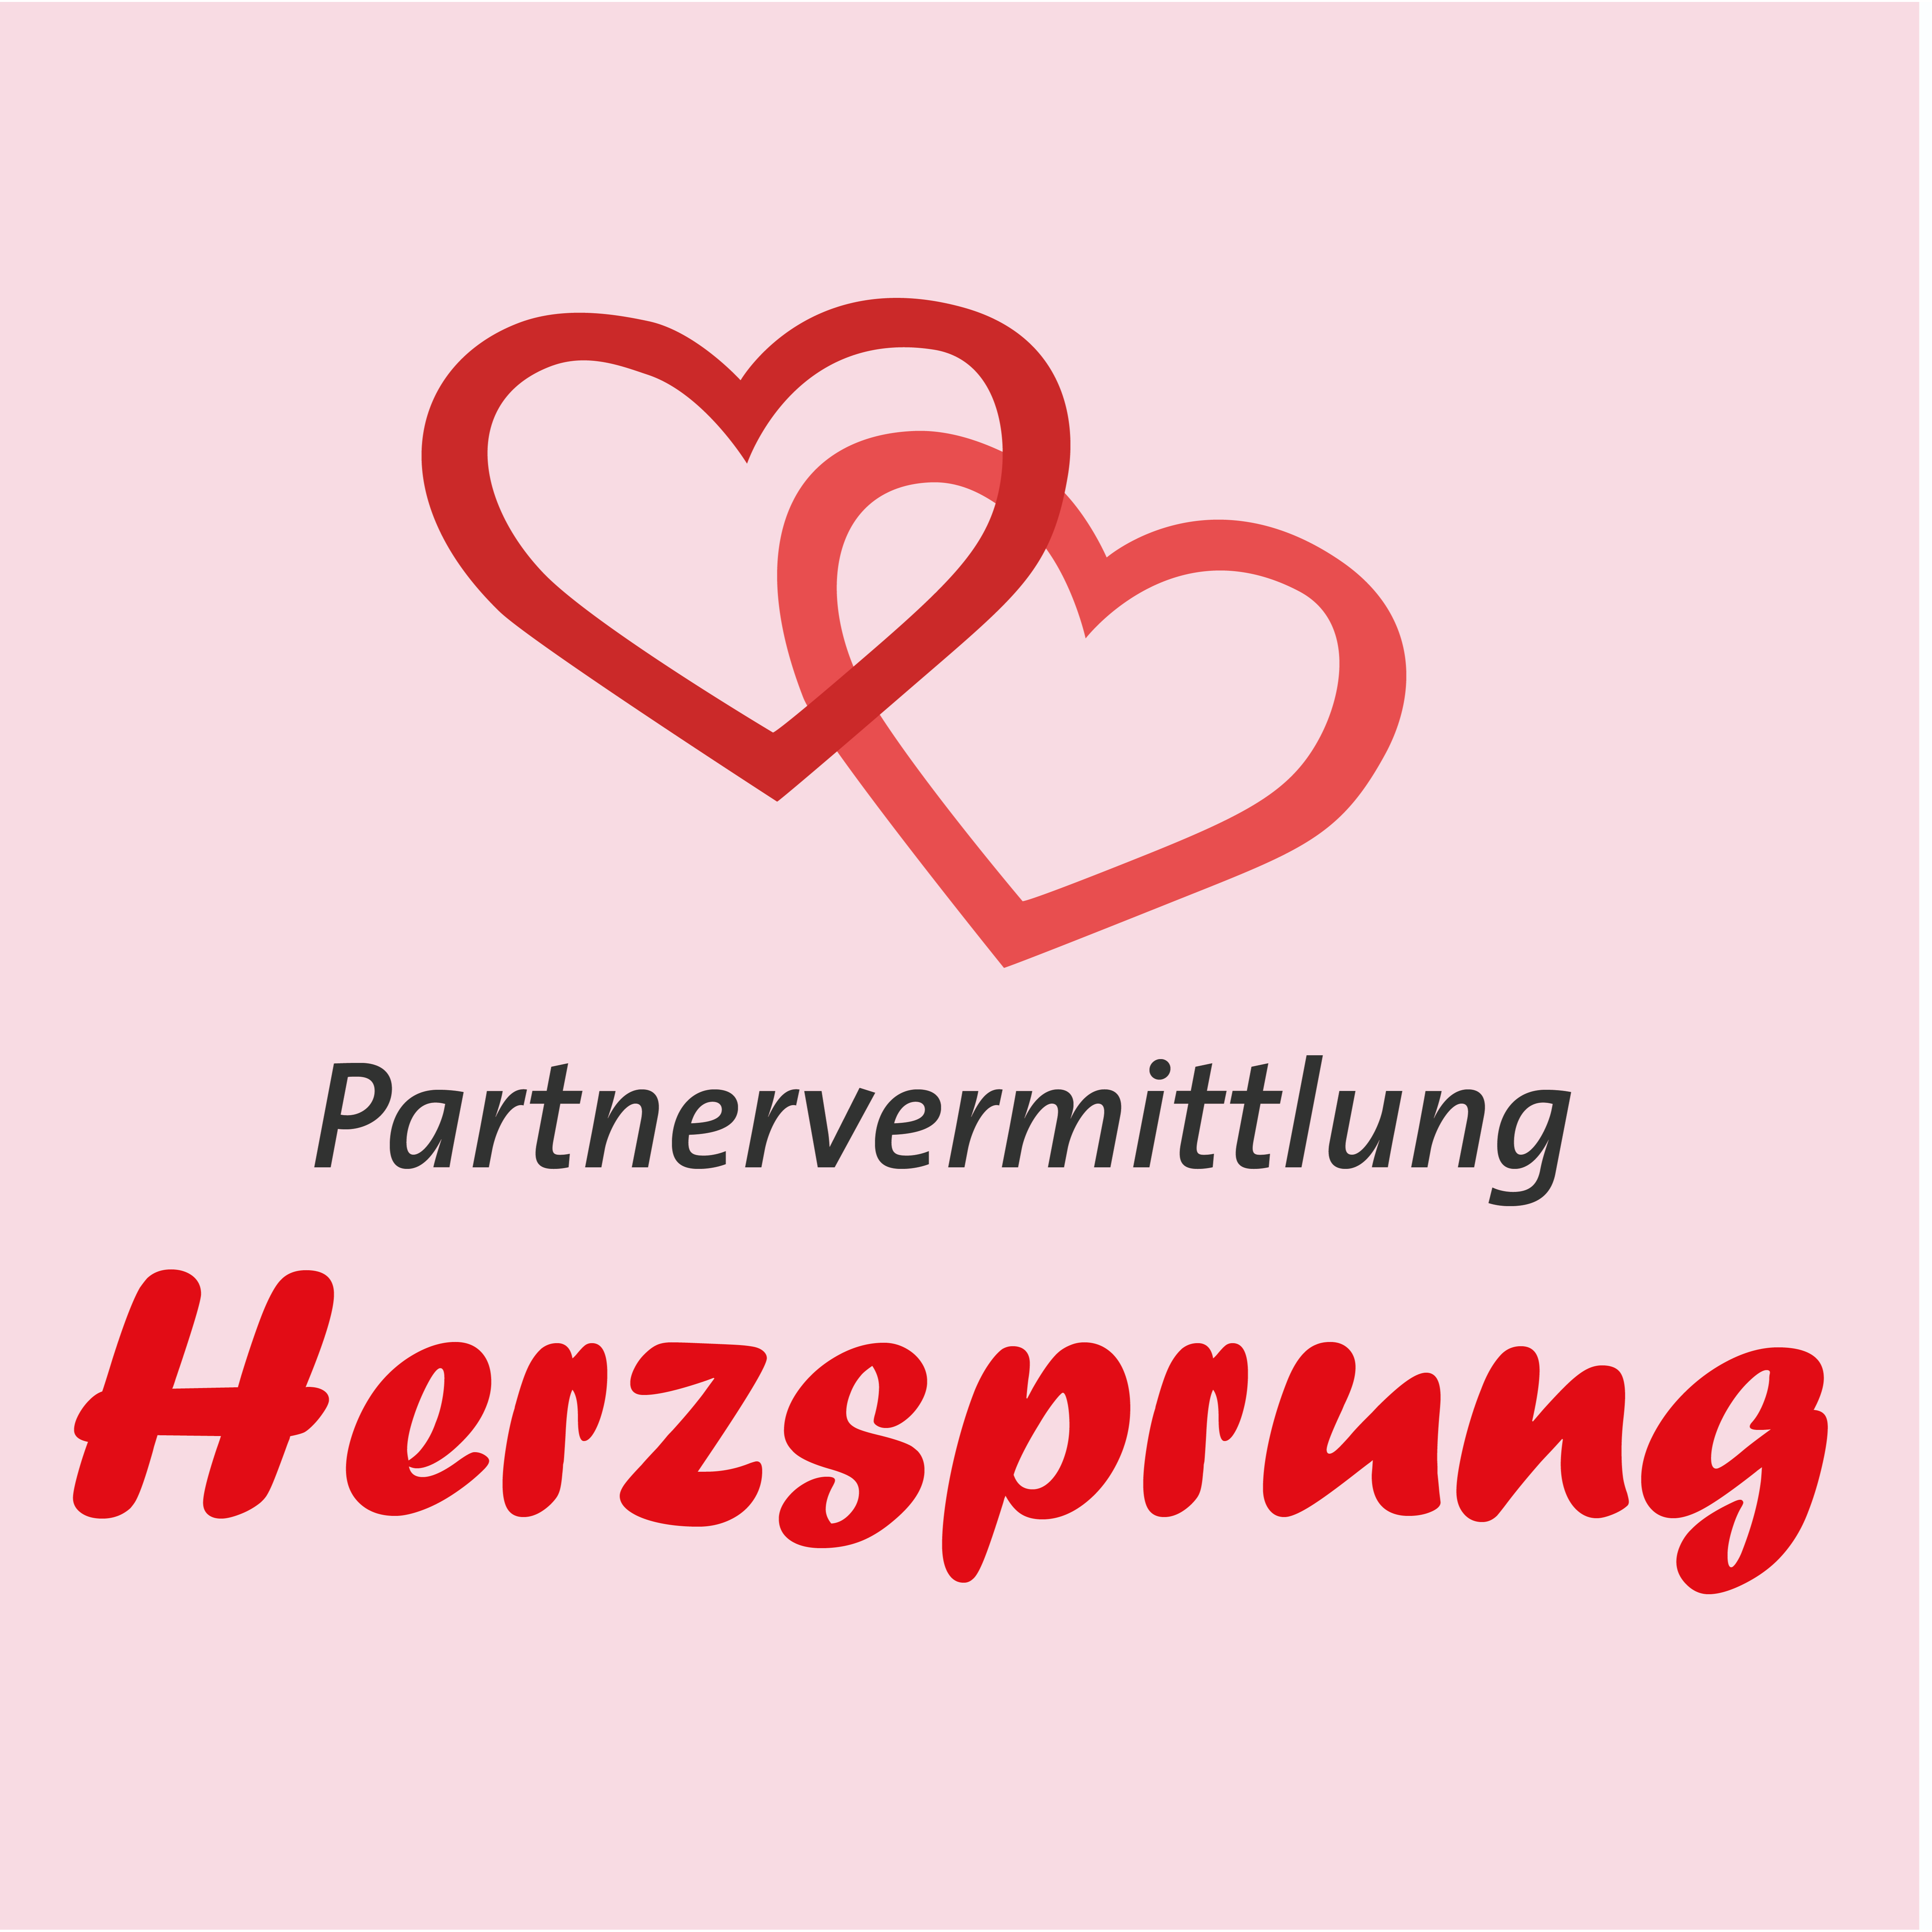 Partnervermittlung wurzburg